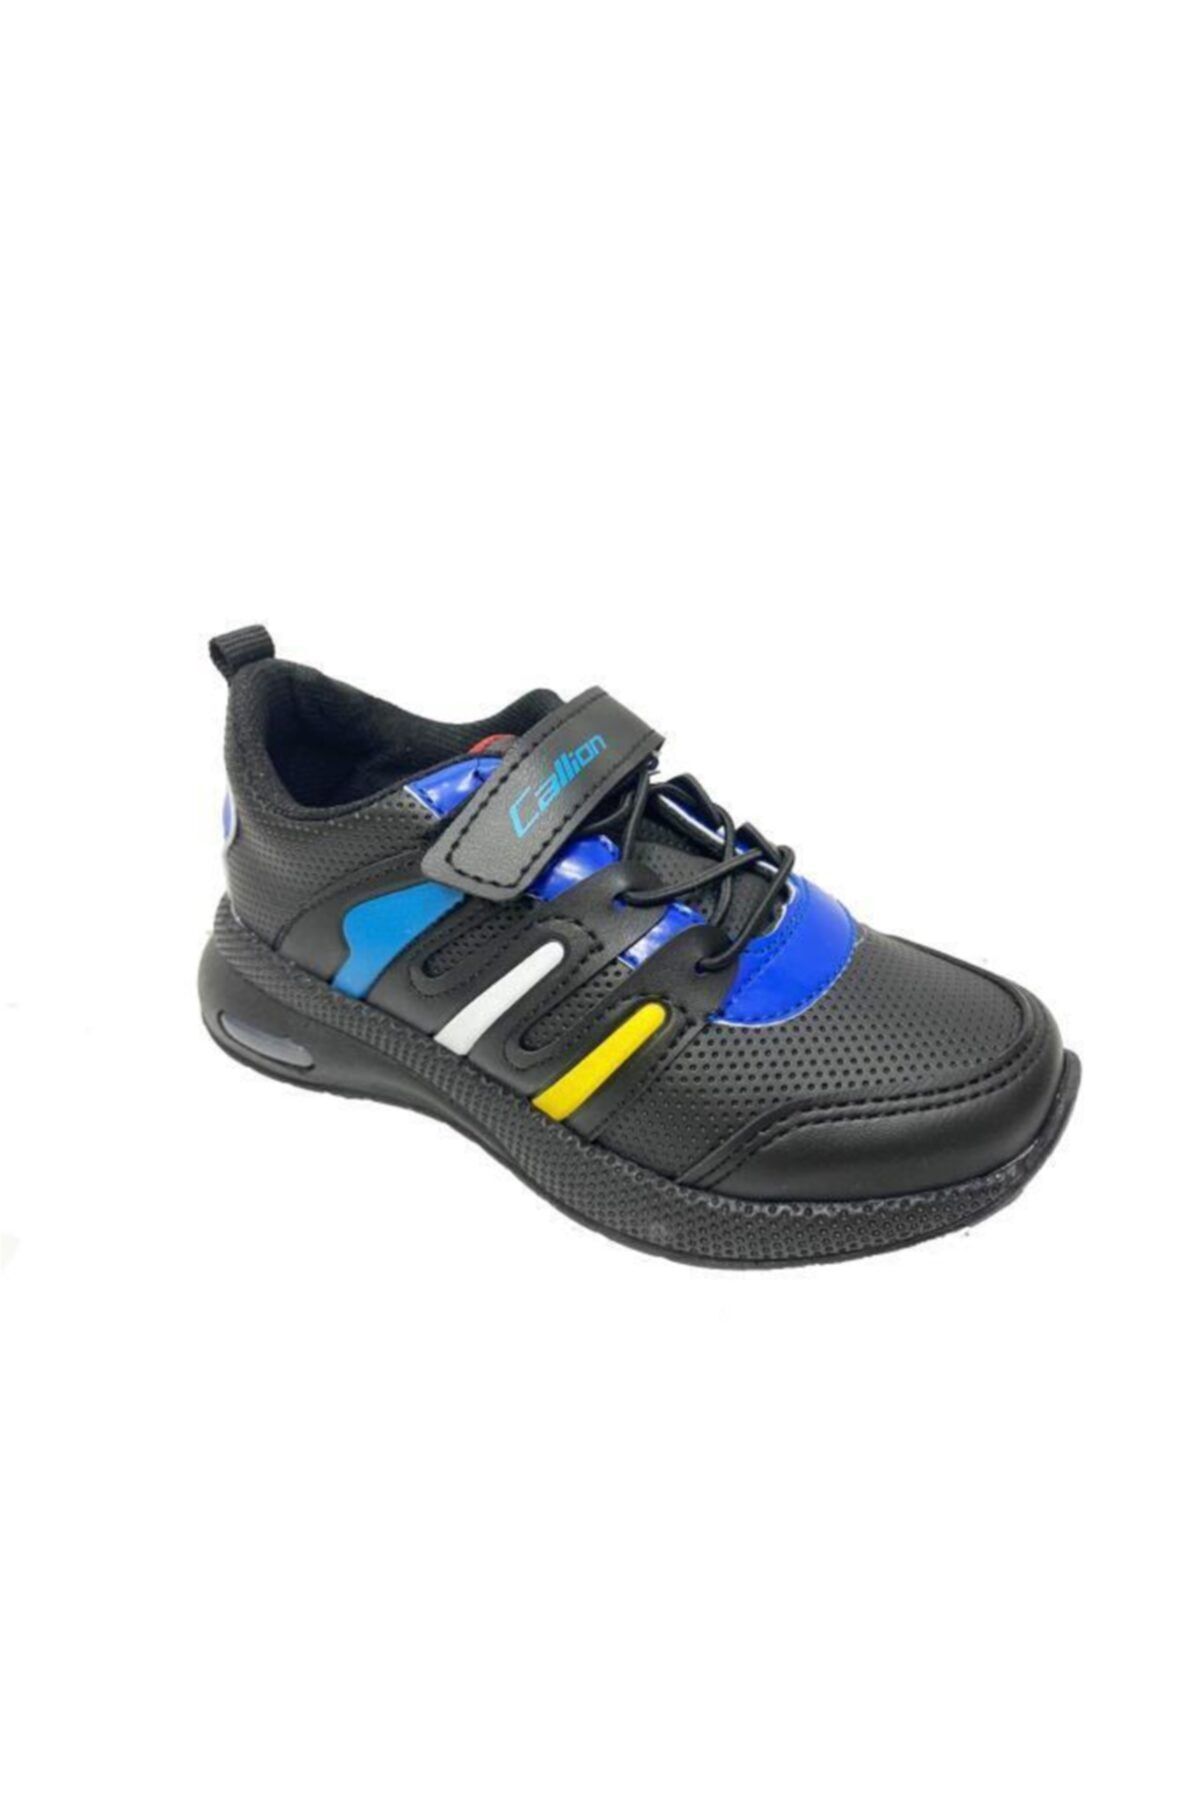 Callion 02-21 Işıklı Deri Cırtlı Patik Çocuk Spor Ayakkabı Siyah Sax